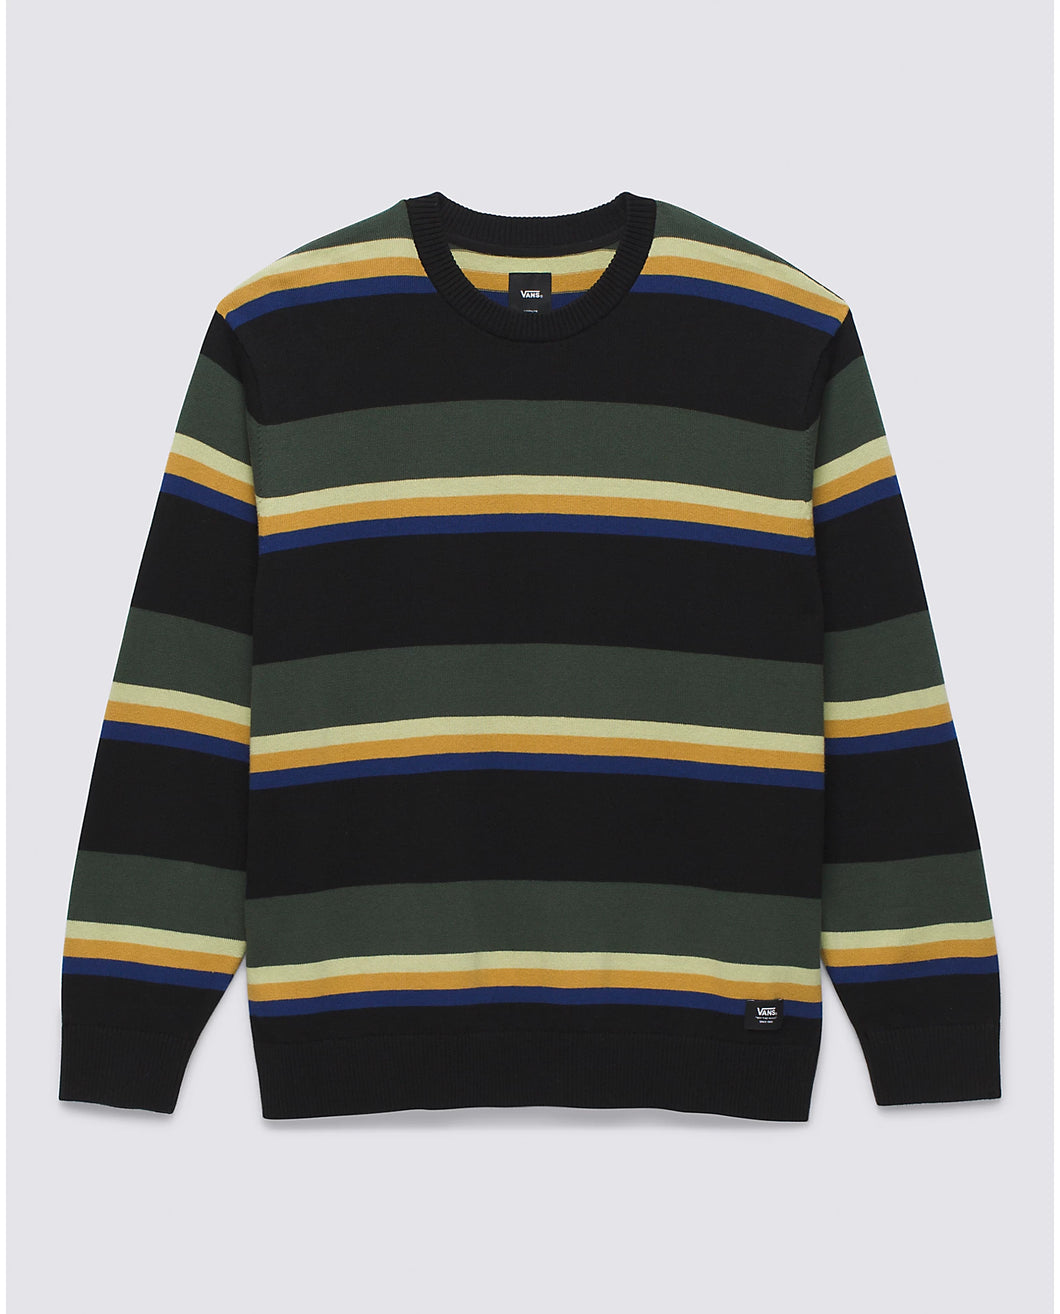 Tacuba Stripe Crew Sweater